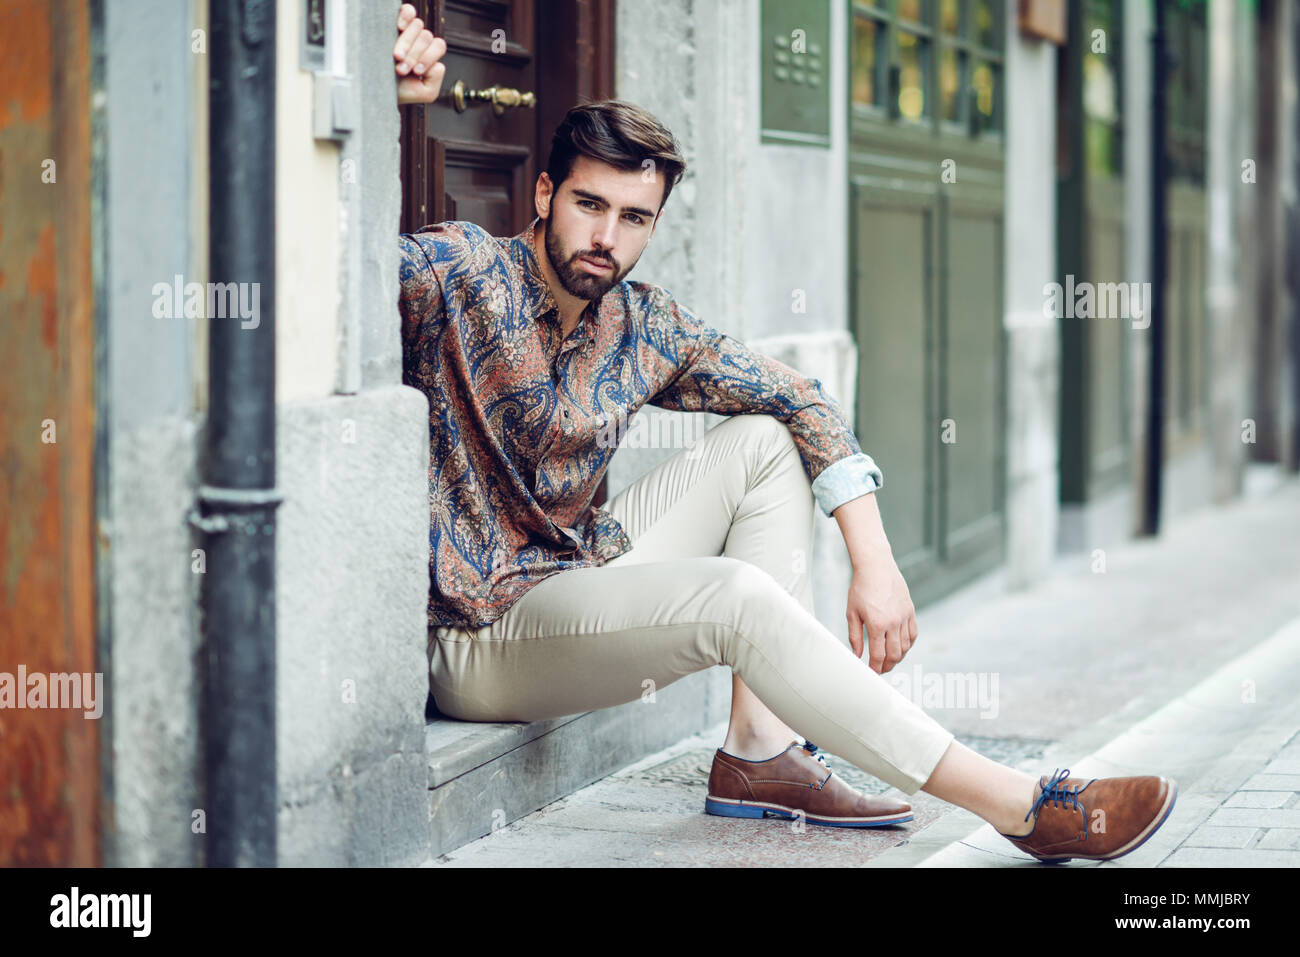 Joven Hombre Barbado, modelo urbana, en un paso vistiendo ropa casual. Chico con barba y peinado moderno mirando a otro lado de la Fotografía de stock - Alamy